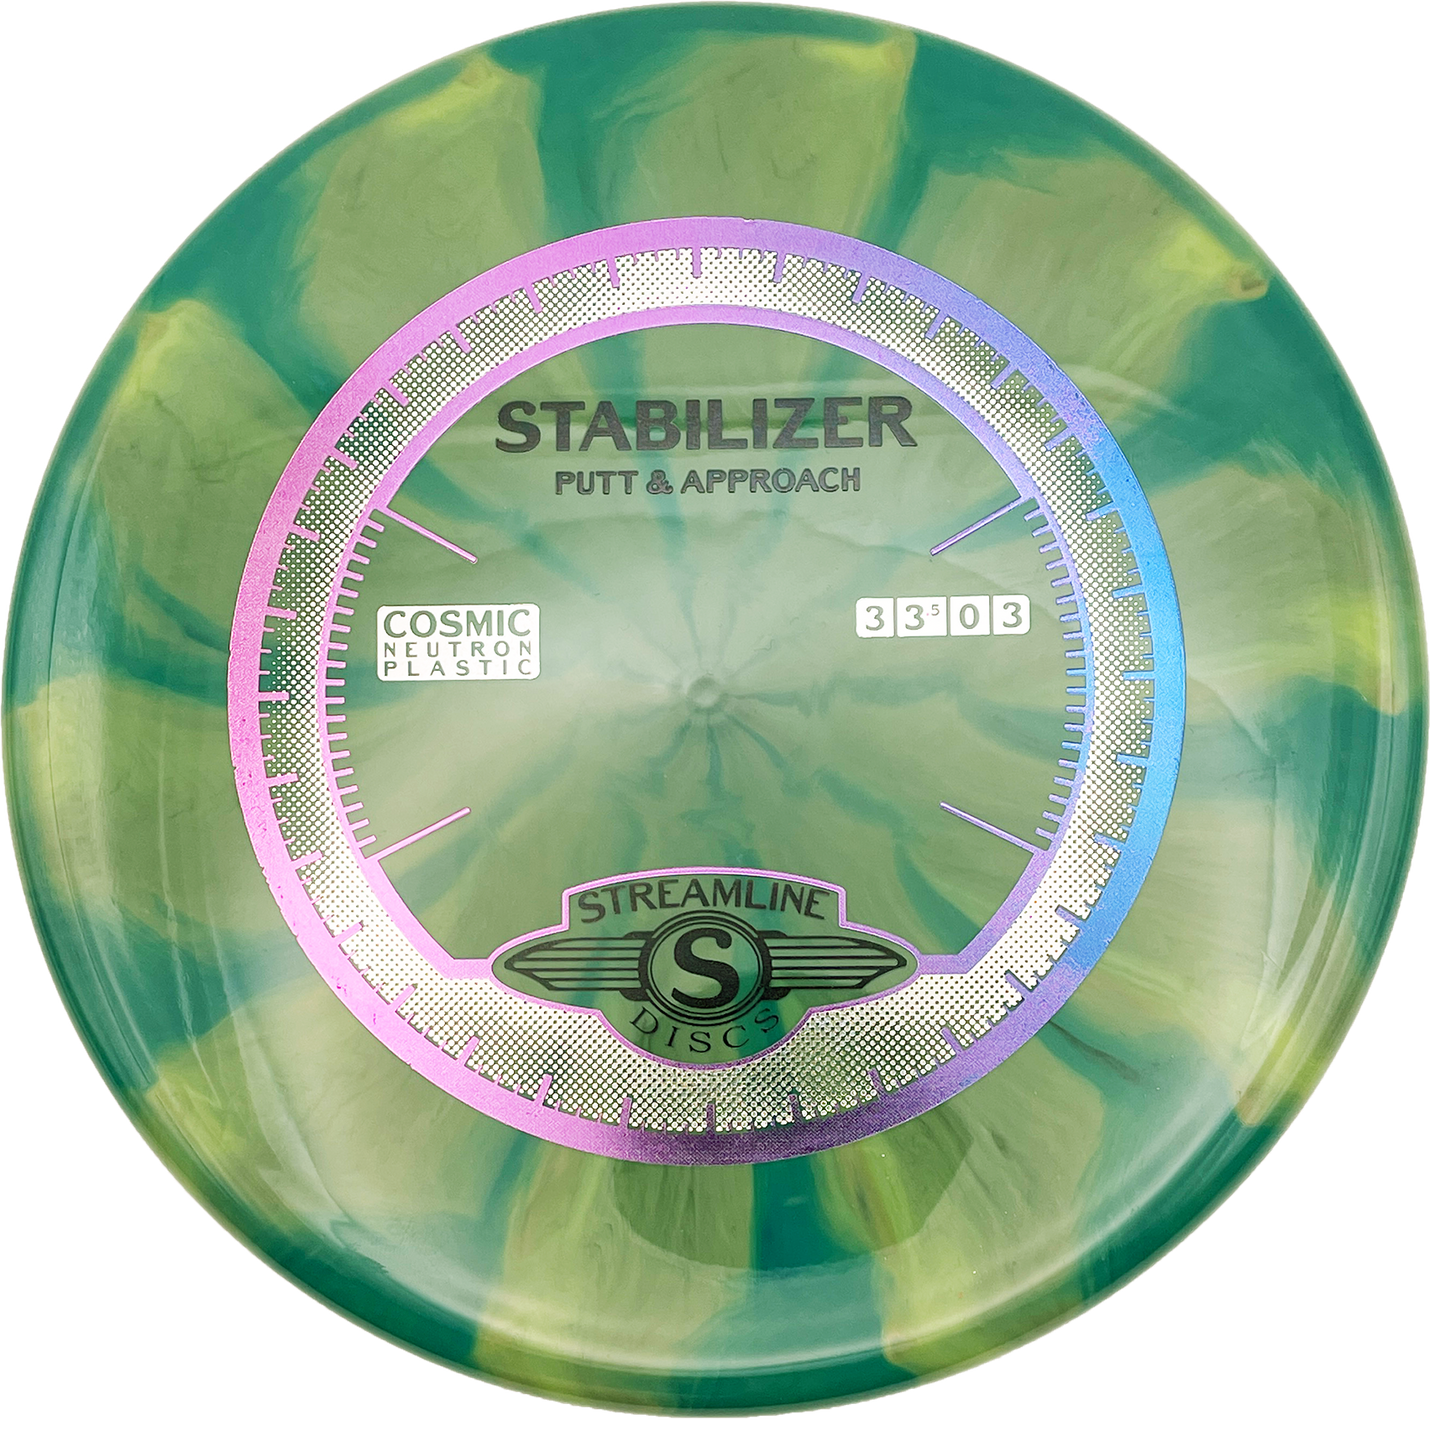 Streamline Stabilizer - Cosmic Neutron - Green Swirl